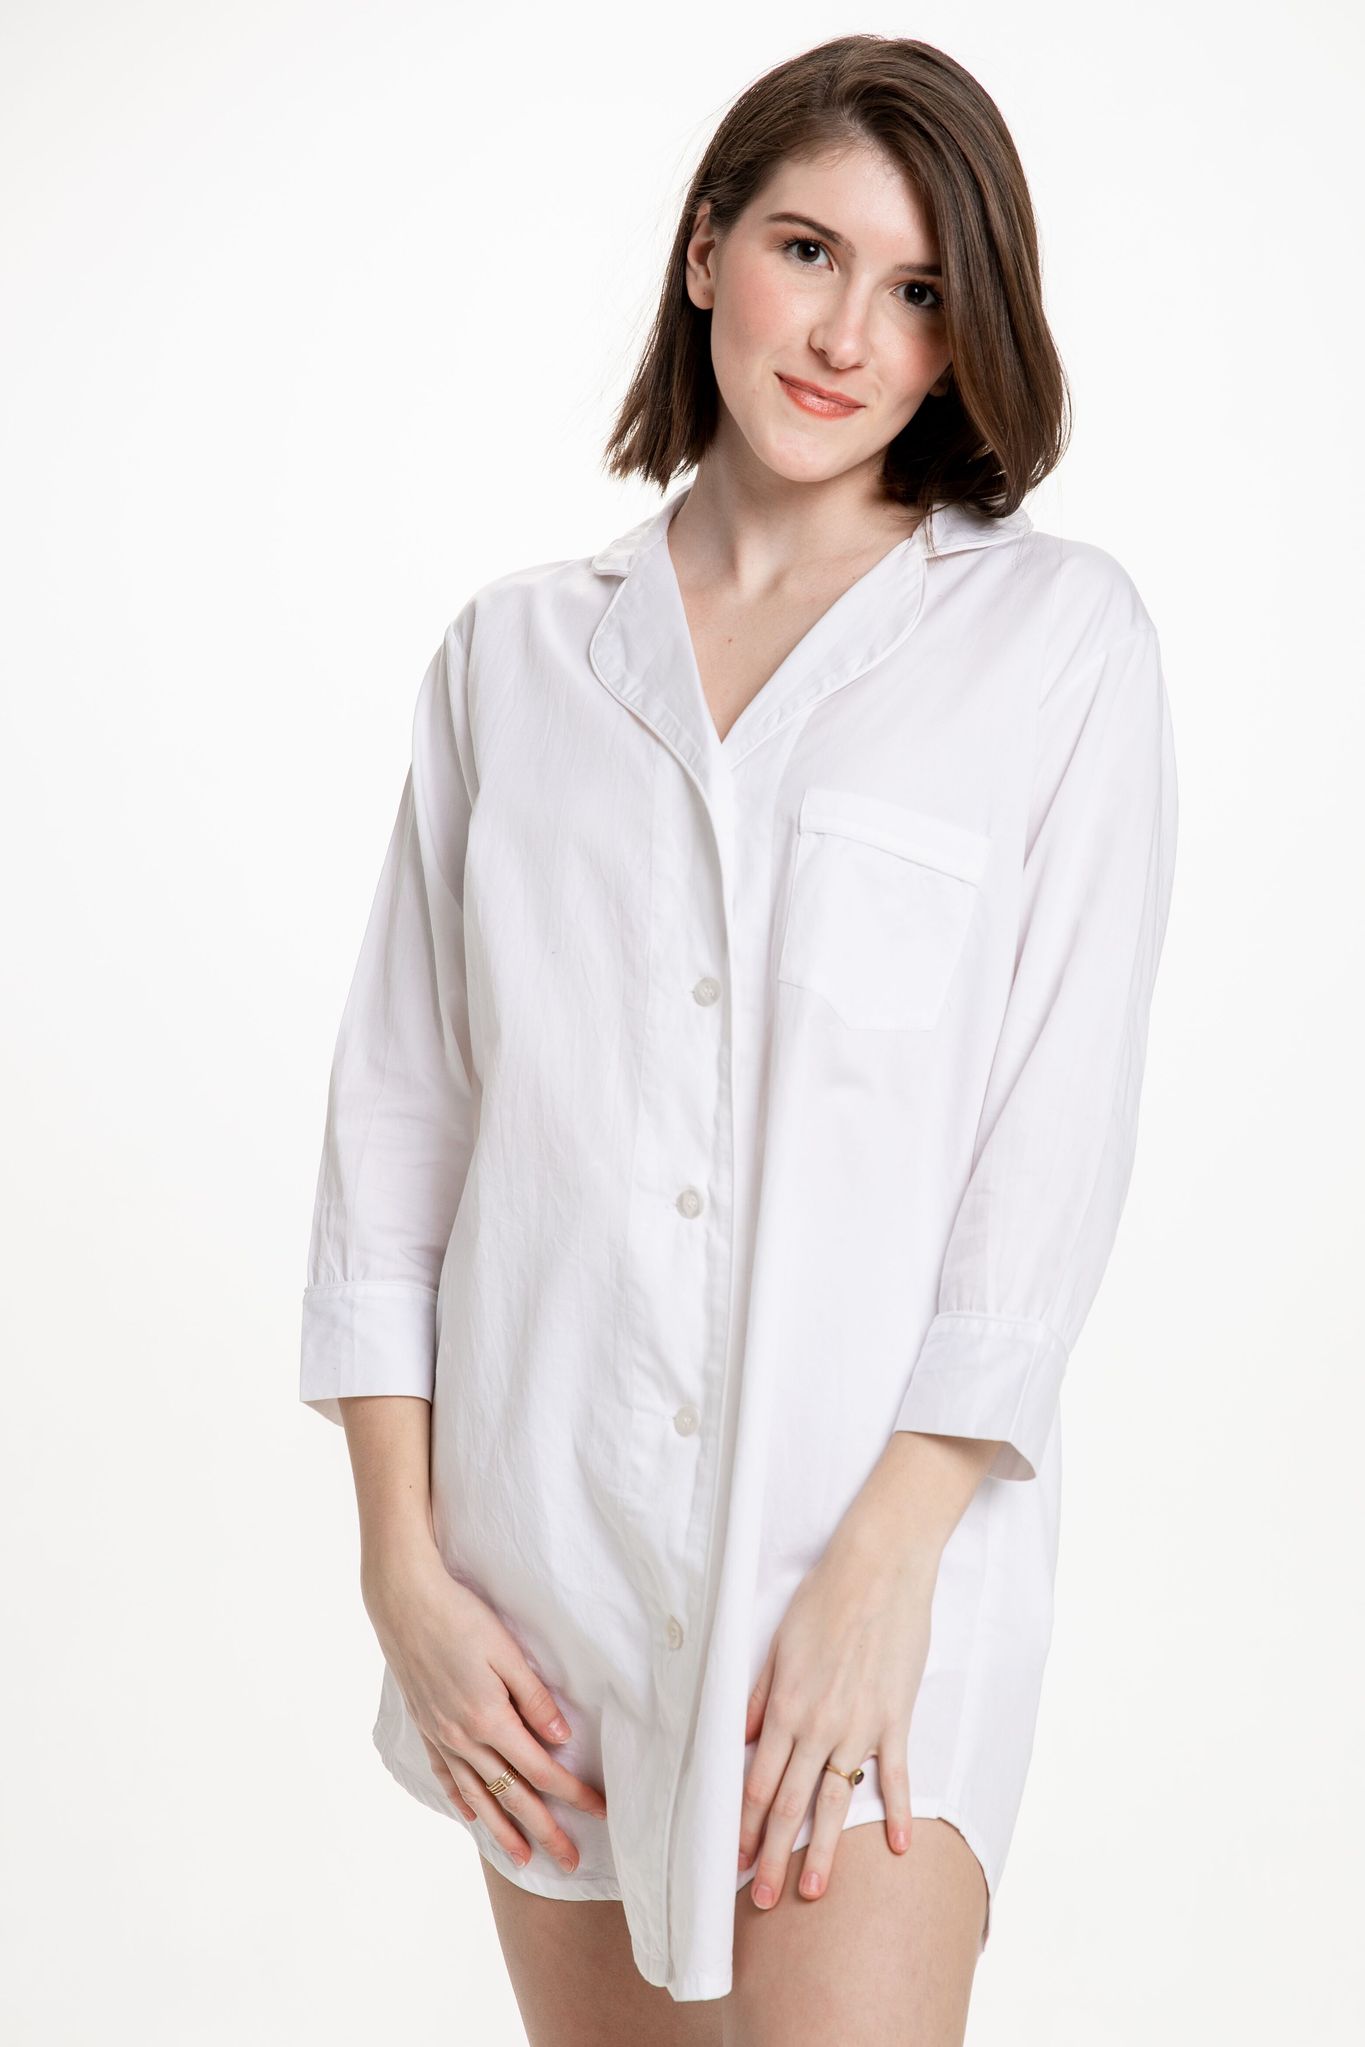 Button-Down Sleep Shirt - White - Small/Medium